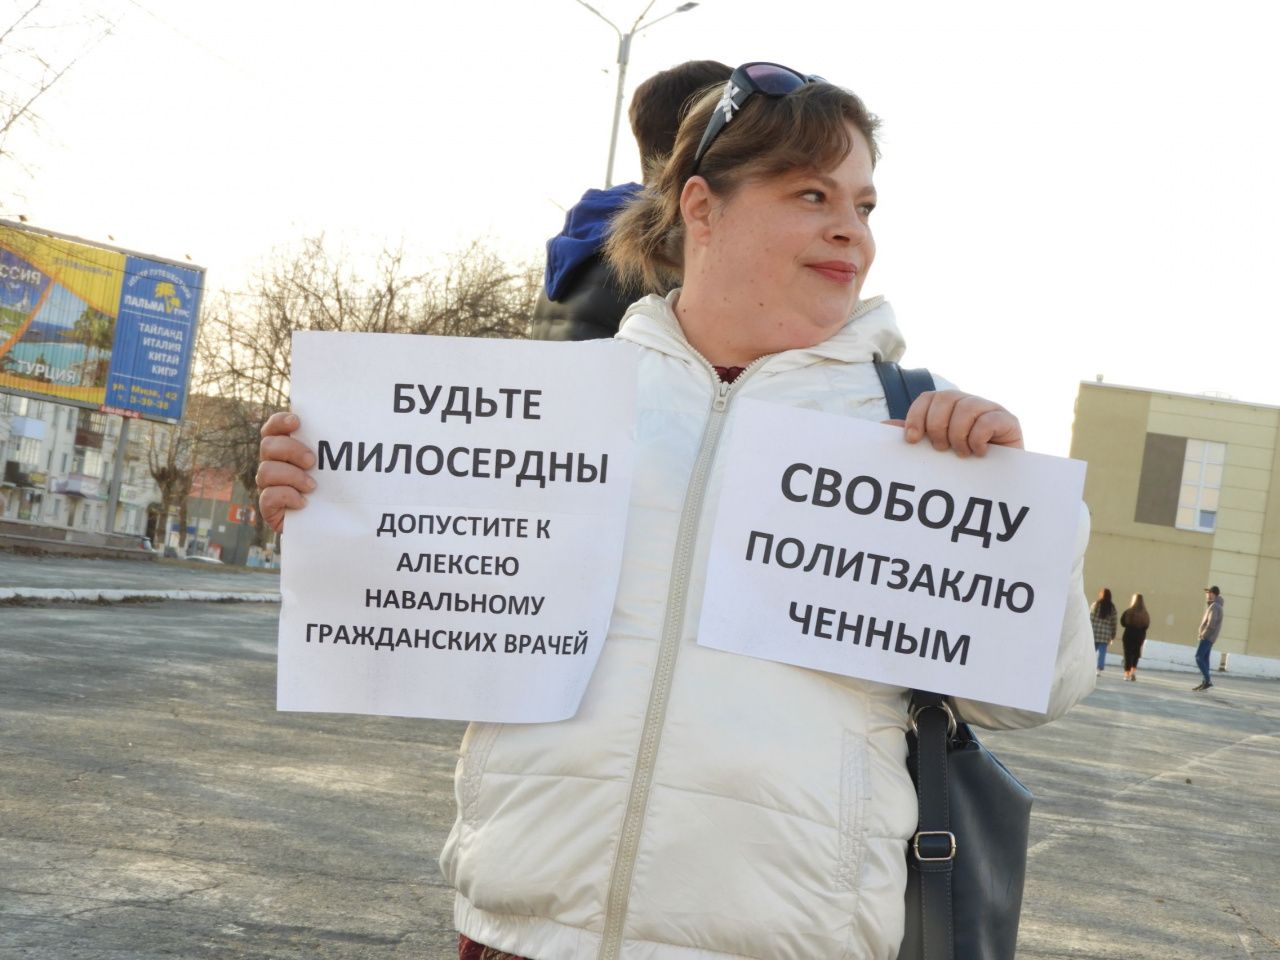 Карпинцы также вышли на протестную акцию в поддержку Навального